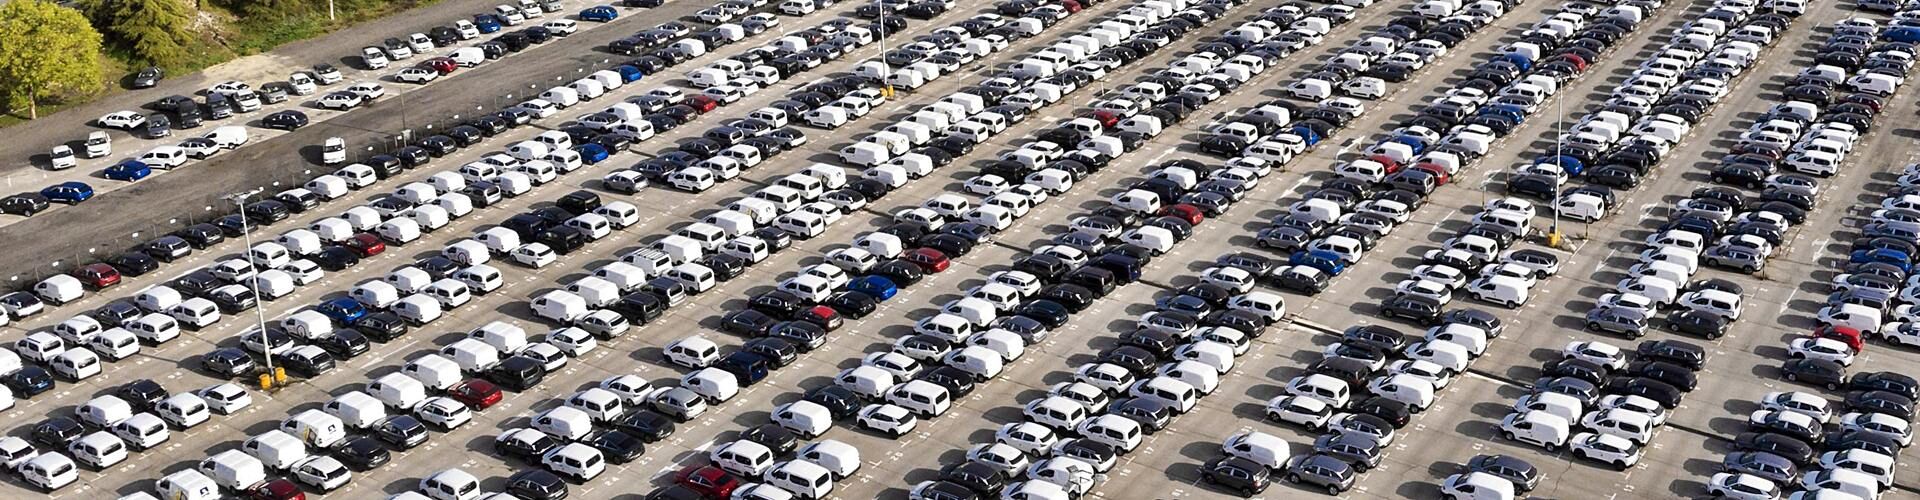 Cuántos coches hay en el mundo